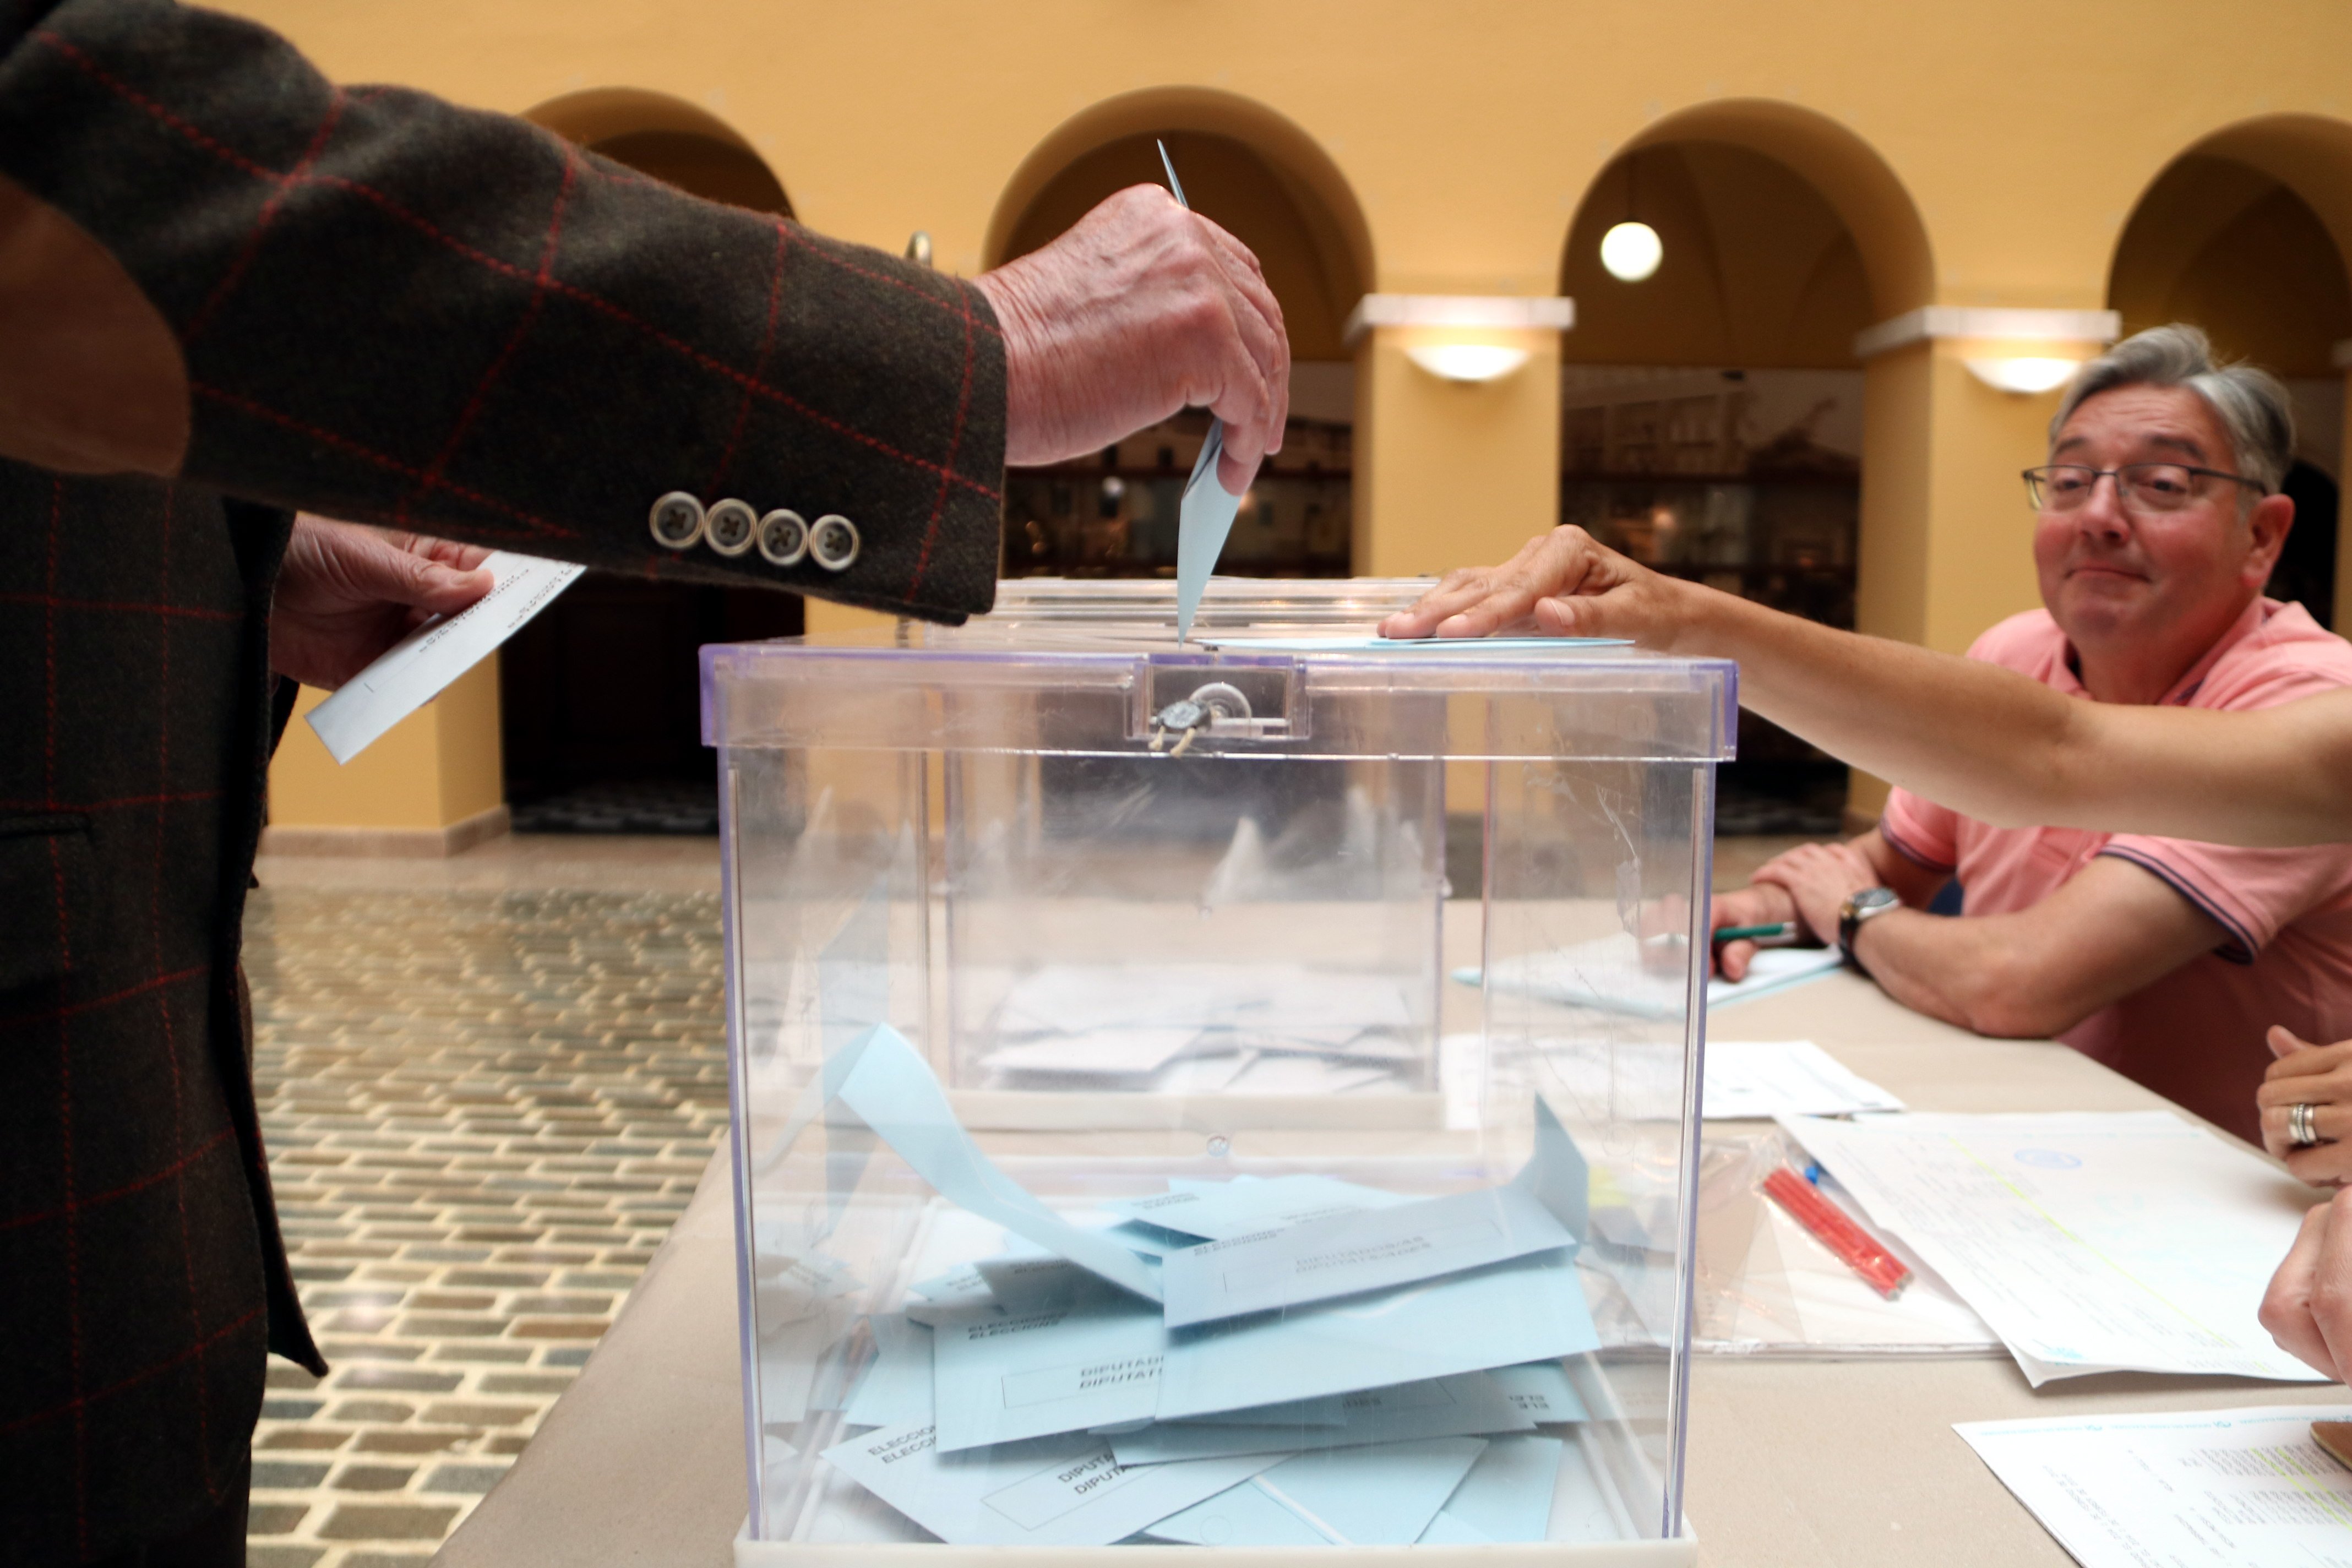 Elecciones en pandemia: así prepara Catalunya el 14-F